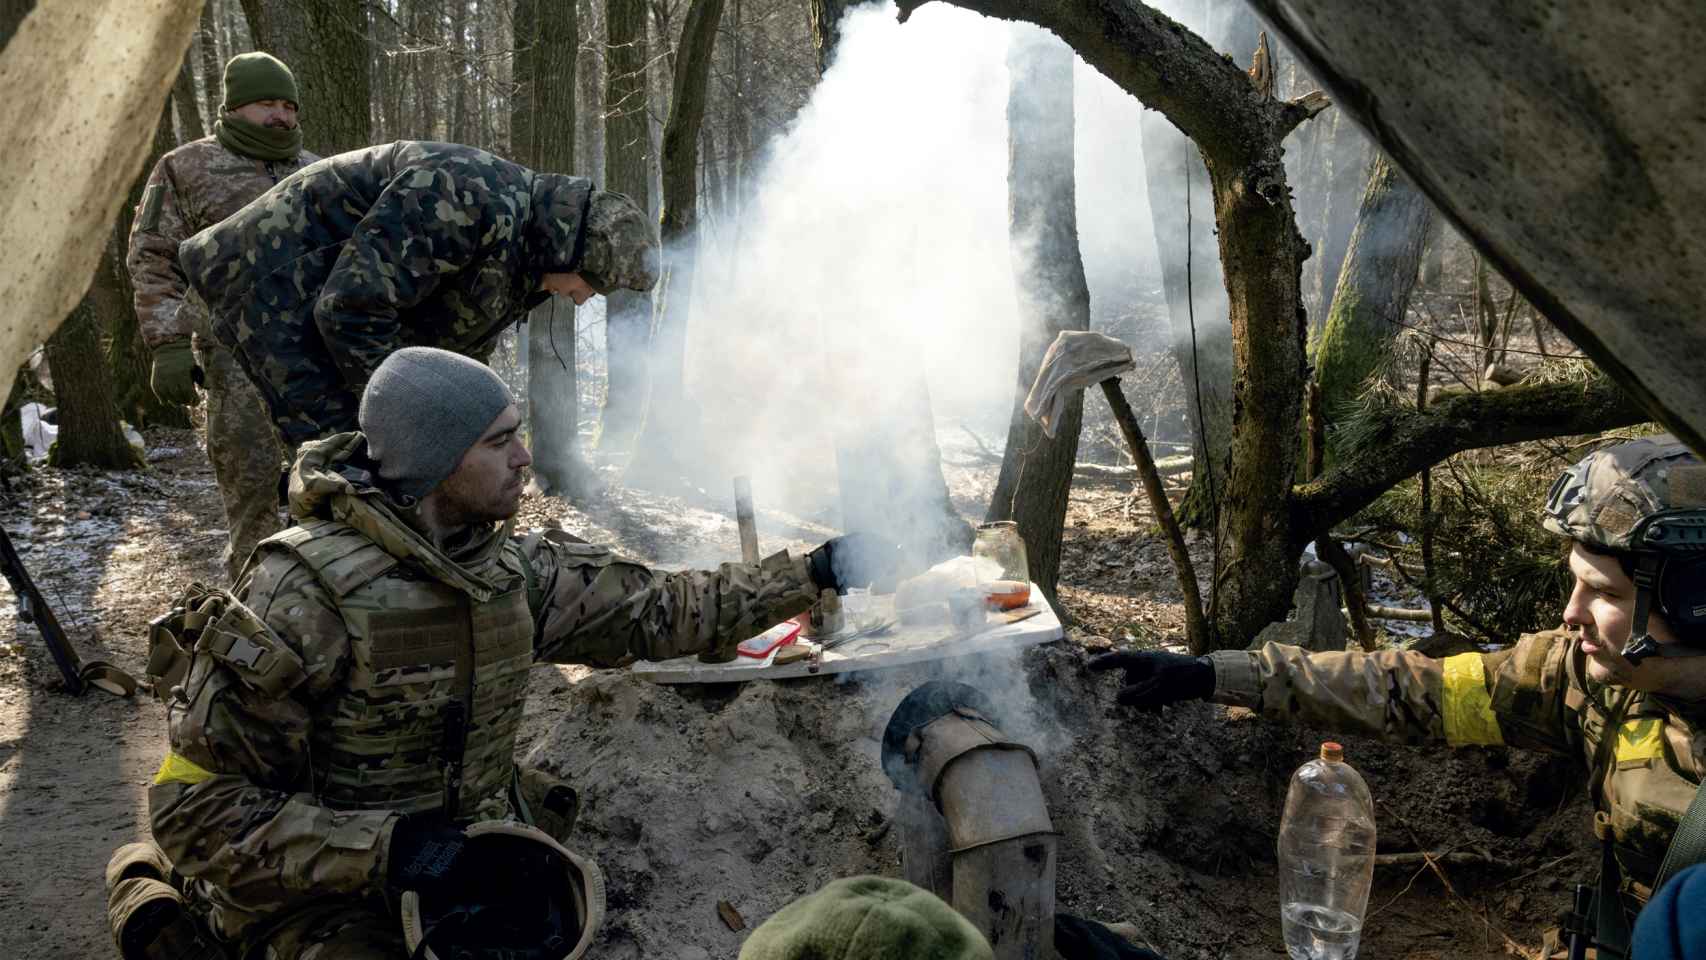 Las últimas imágenes de Maks Levin en la guerra de Ucrania: Todo fotógrafo ucraniano sueña con hacer la fotografía que pare esta guerra